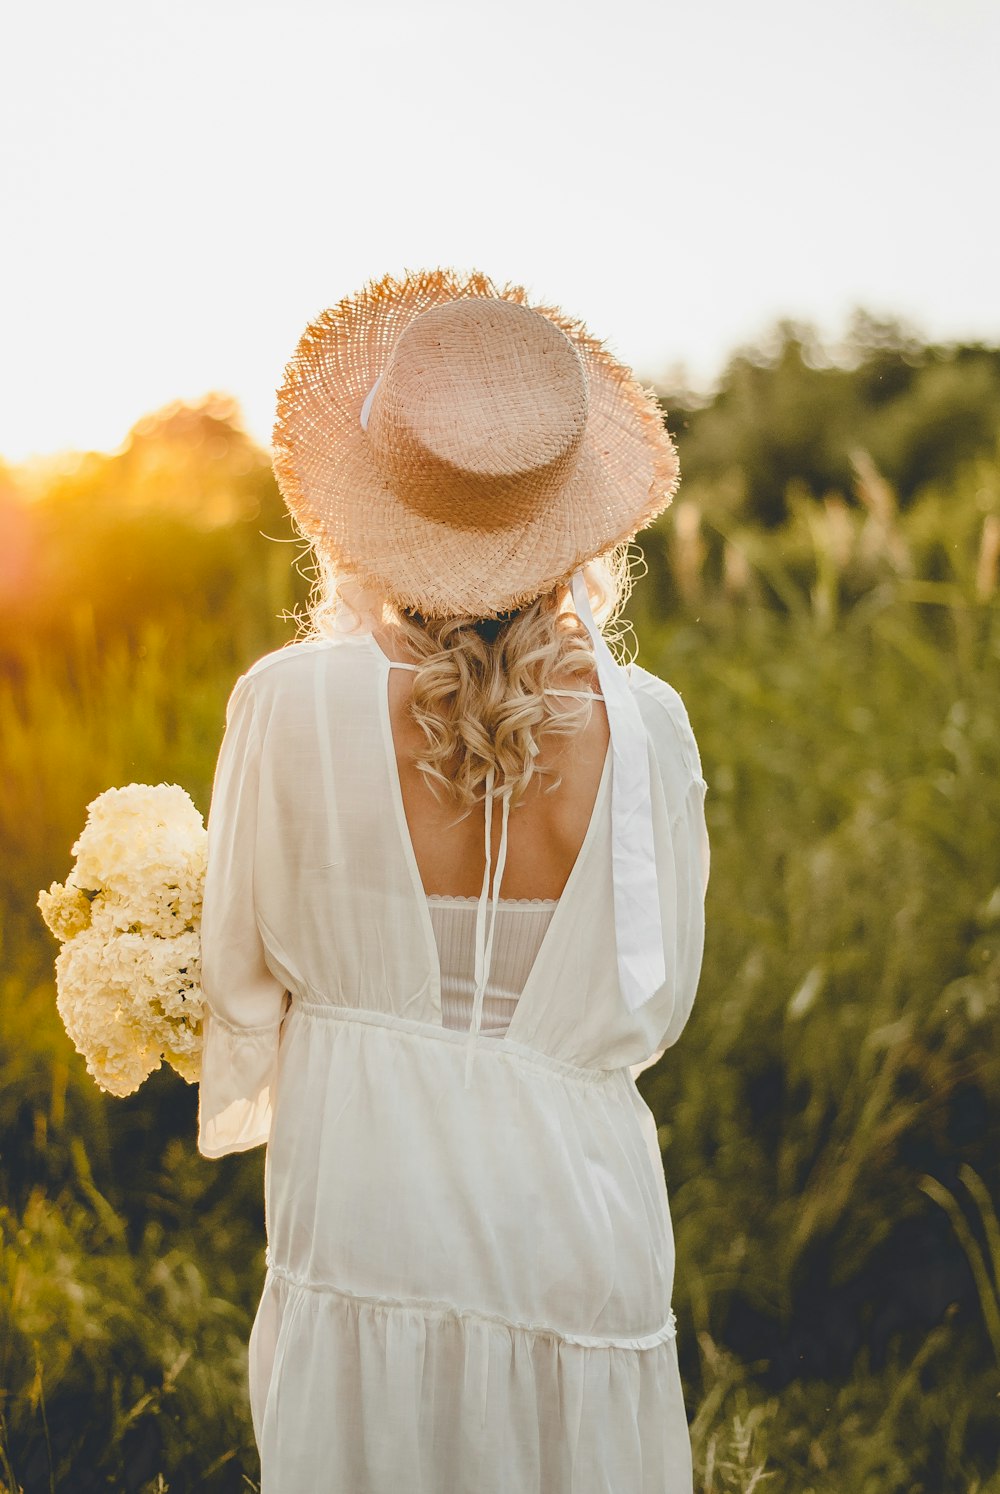 Femme en robe blanche portant un chapeau de soleil marron debout sur un champ de fleurs jaunes pendant la journée